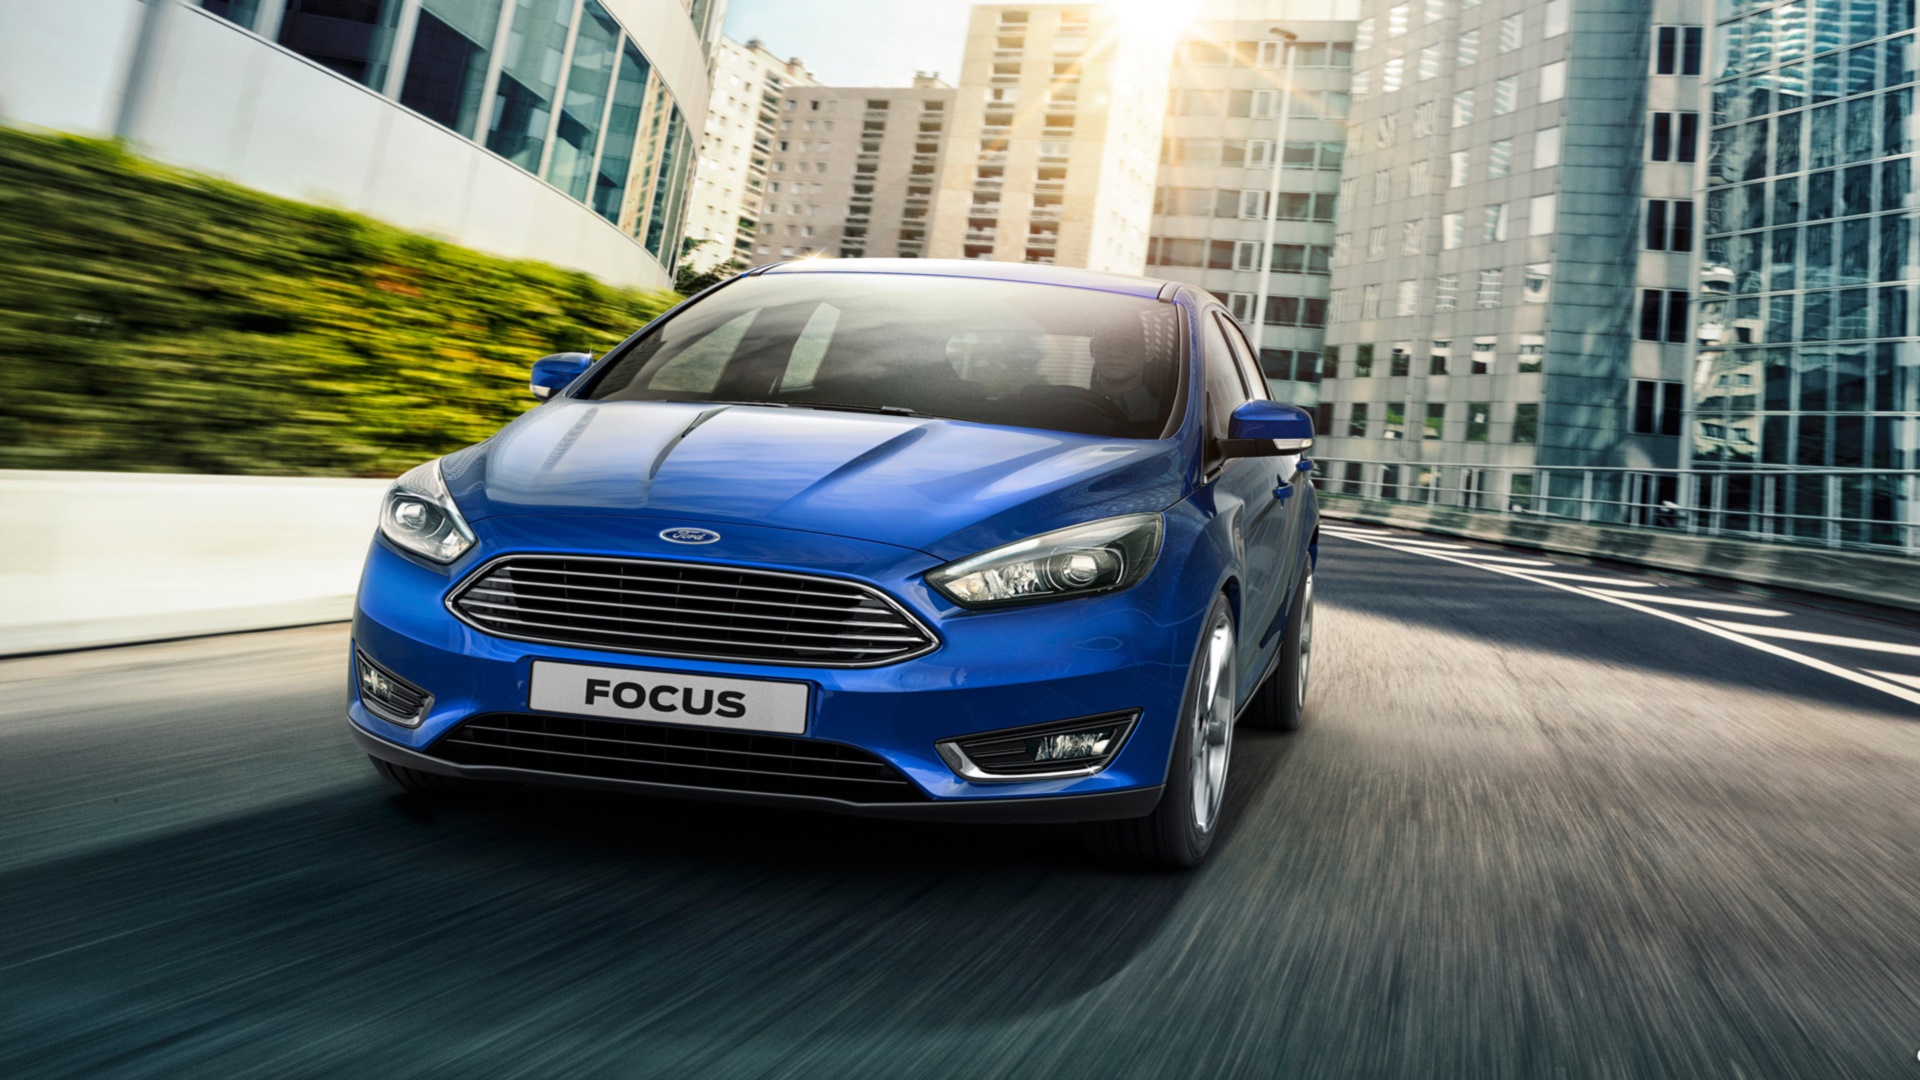 Descargar fondos de escritorio de Ford Focus 2015 HD